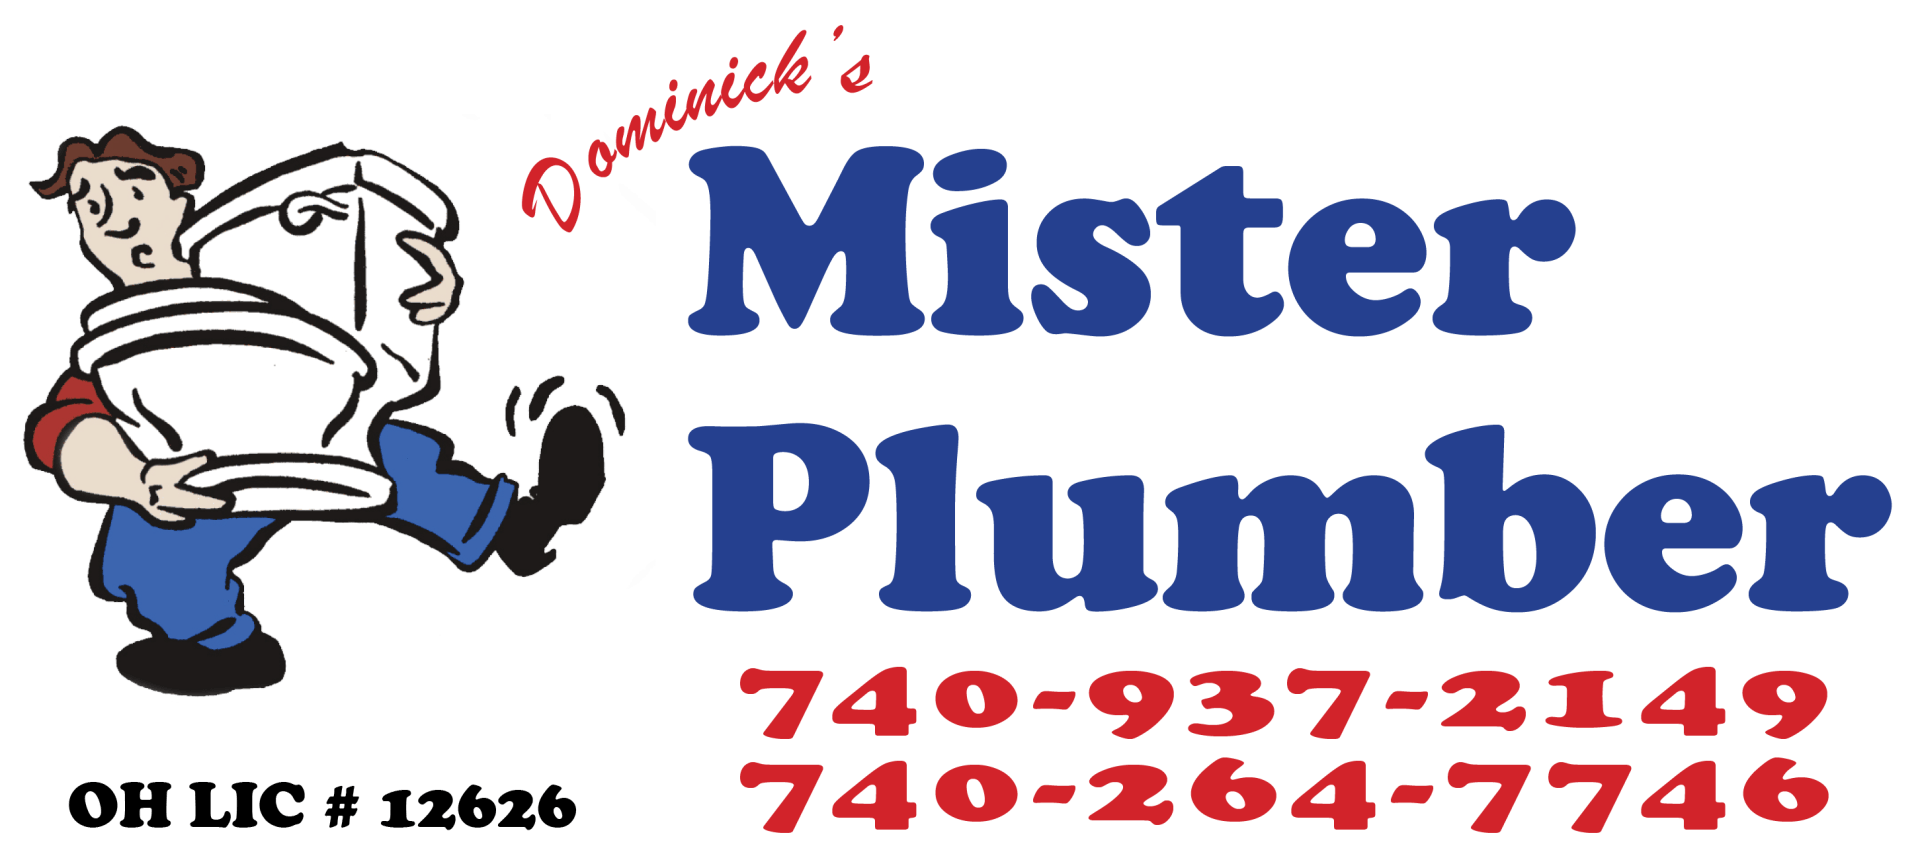 Mister Plumber - Logo